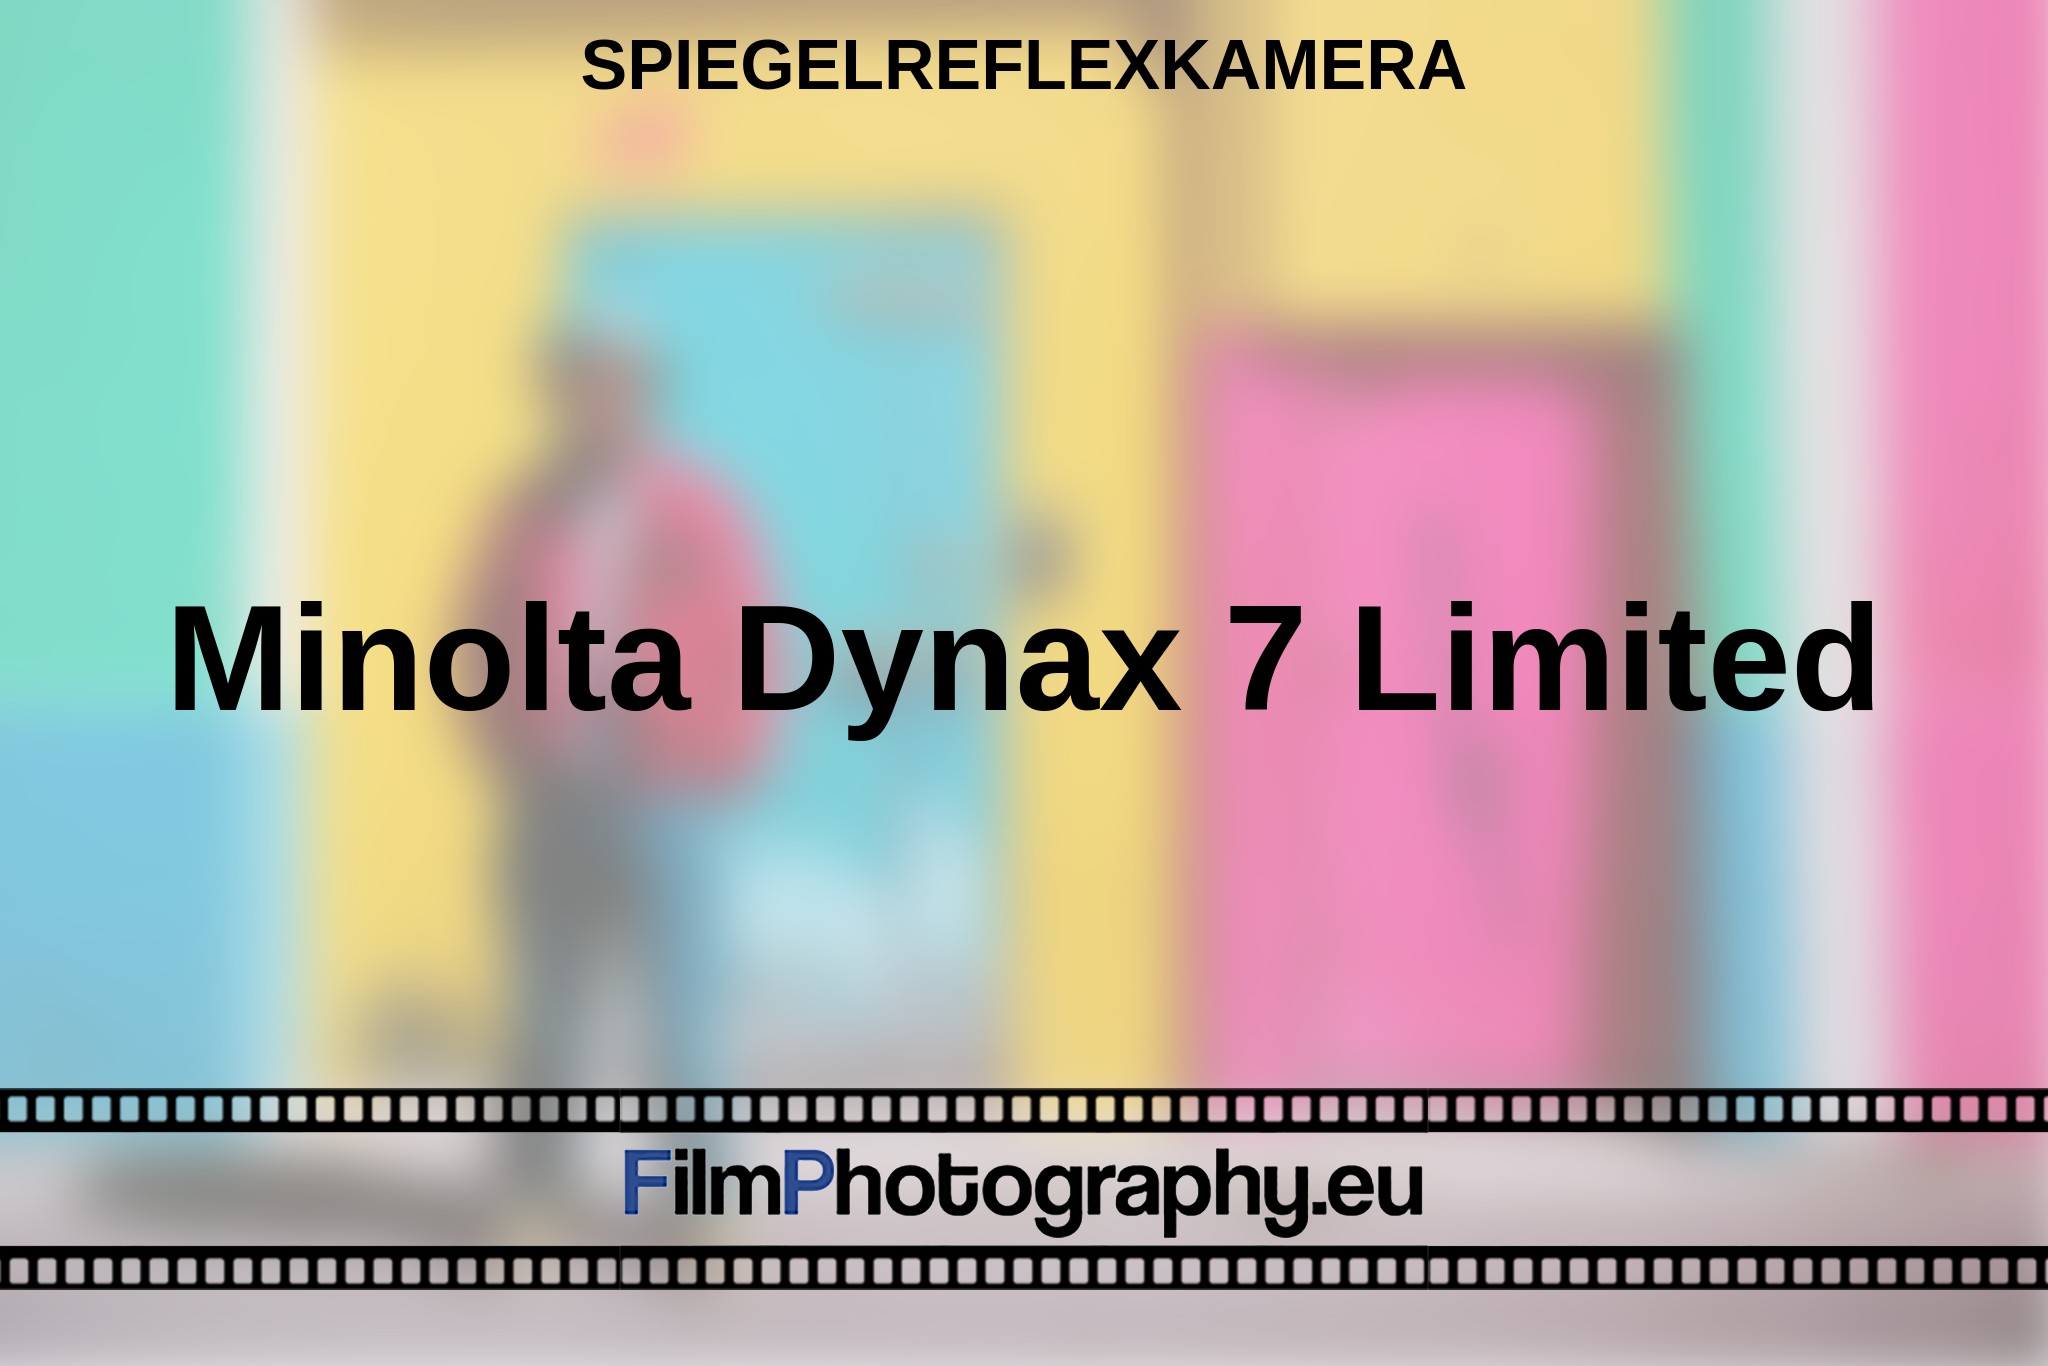 minolta-dynax-7-limited-spiegelreflexkamera-bnv.jpg